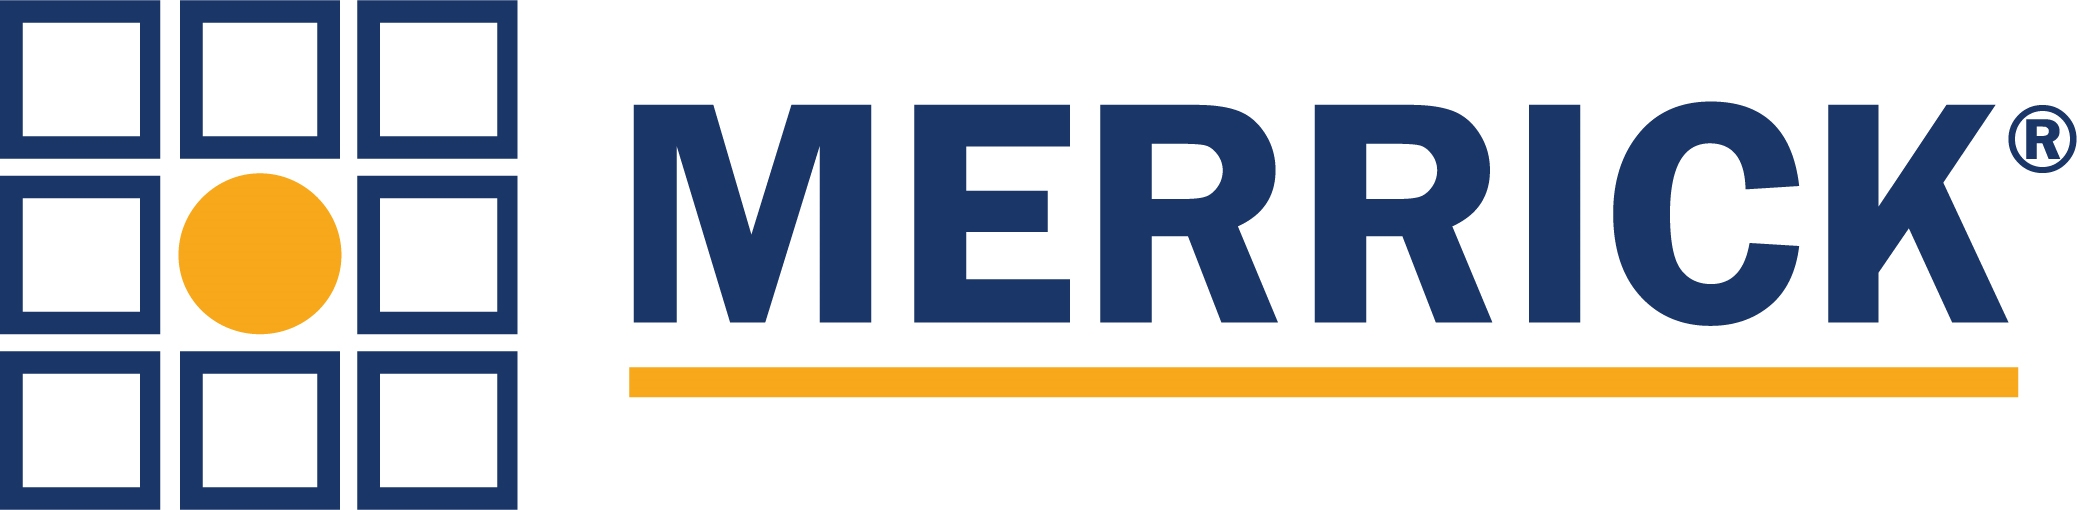 Merrick & Co Company Logo